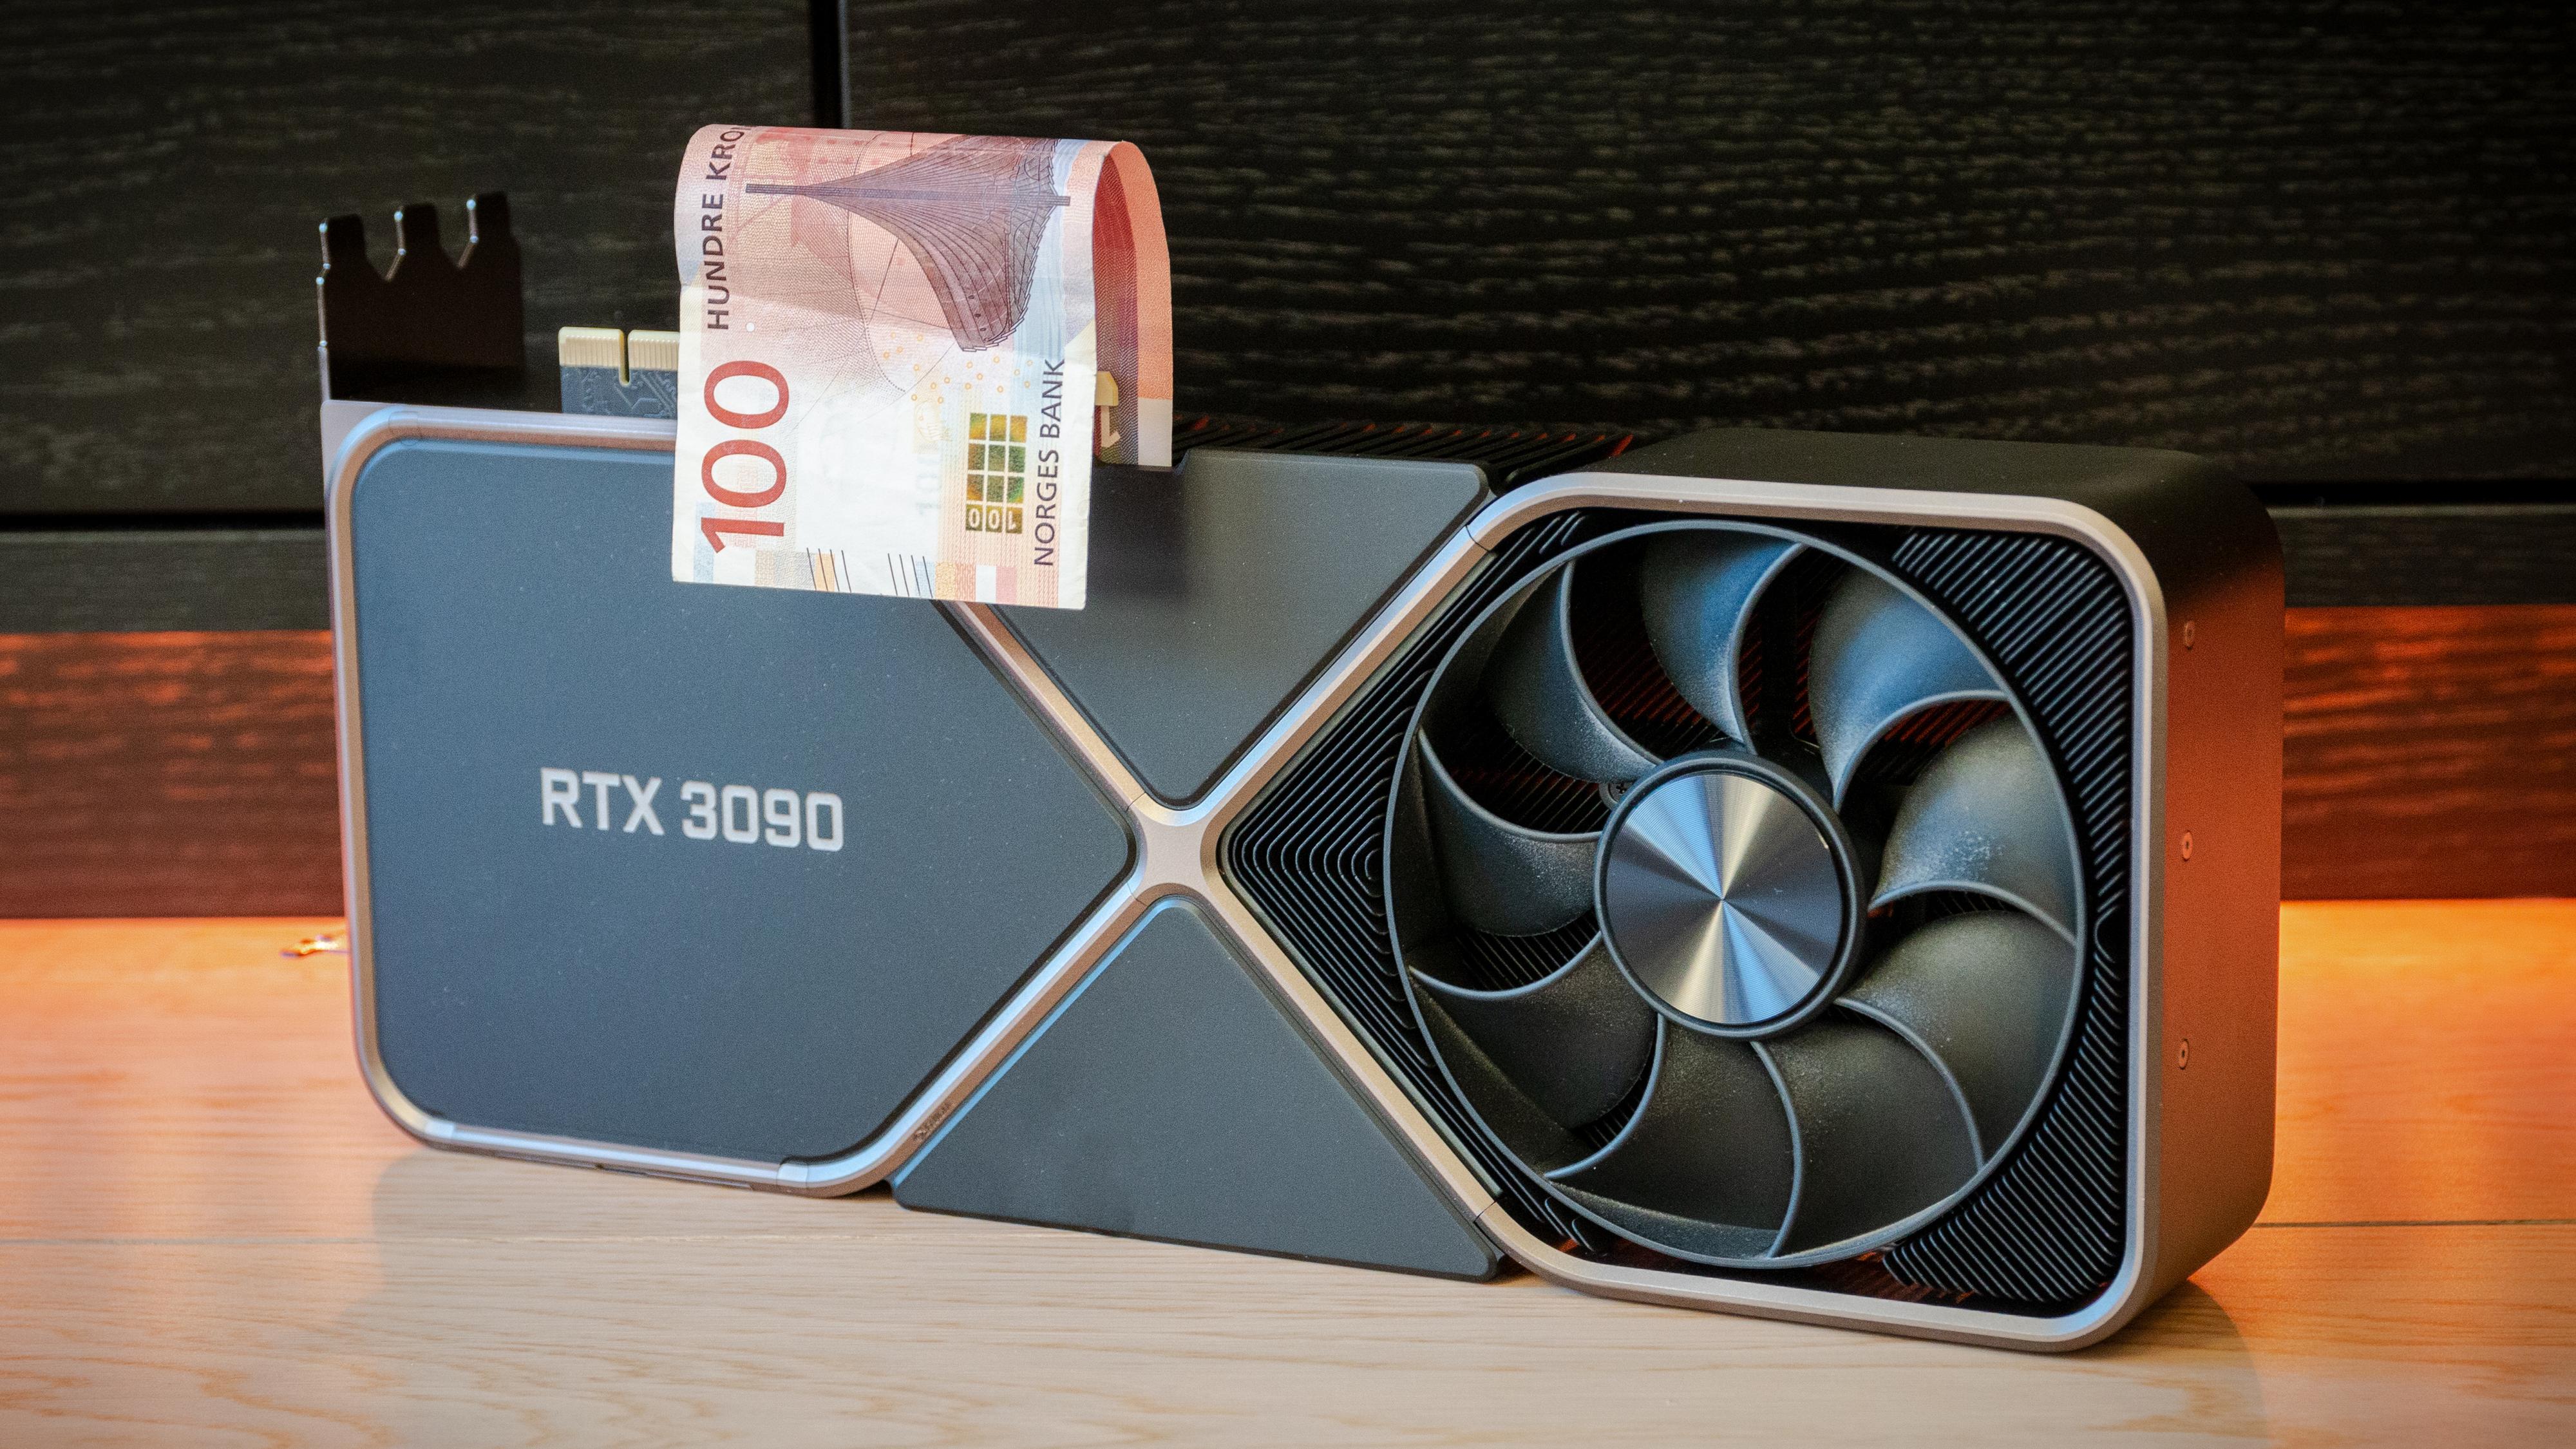 Et RTX 3090 fra Nvidia printer kanskje ikke pengene helt slik, men kan «mine» frem verdier for over 100 kroner dagen akkurat nå.